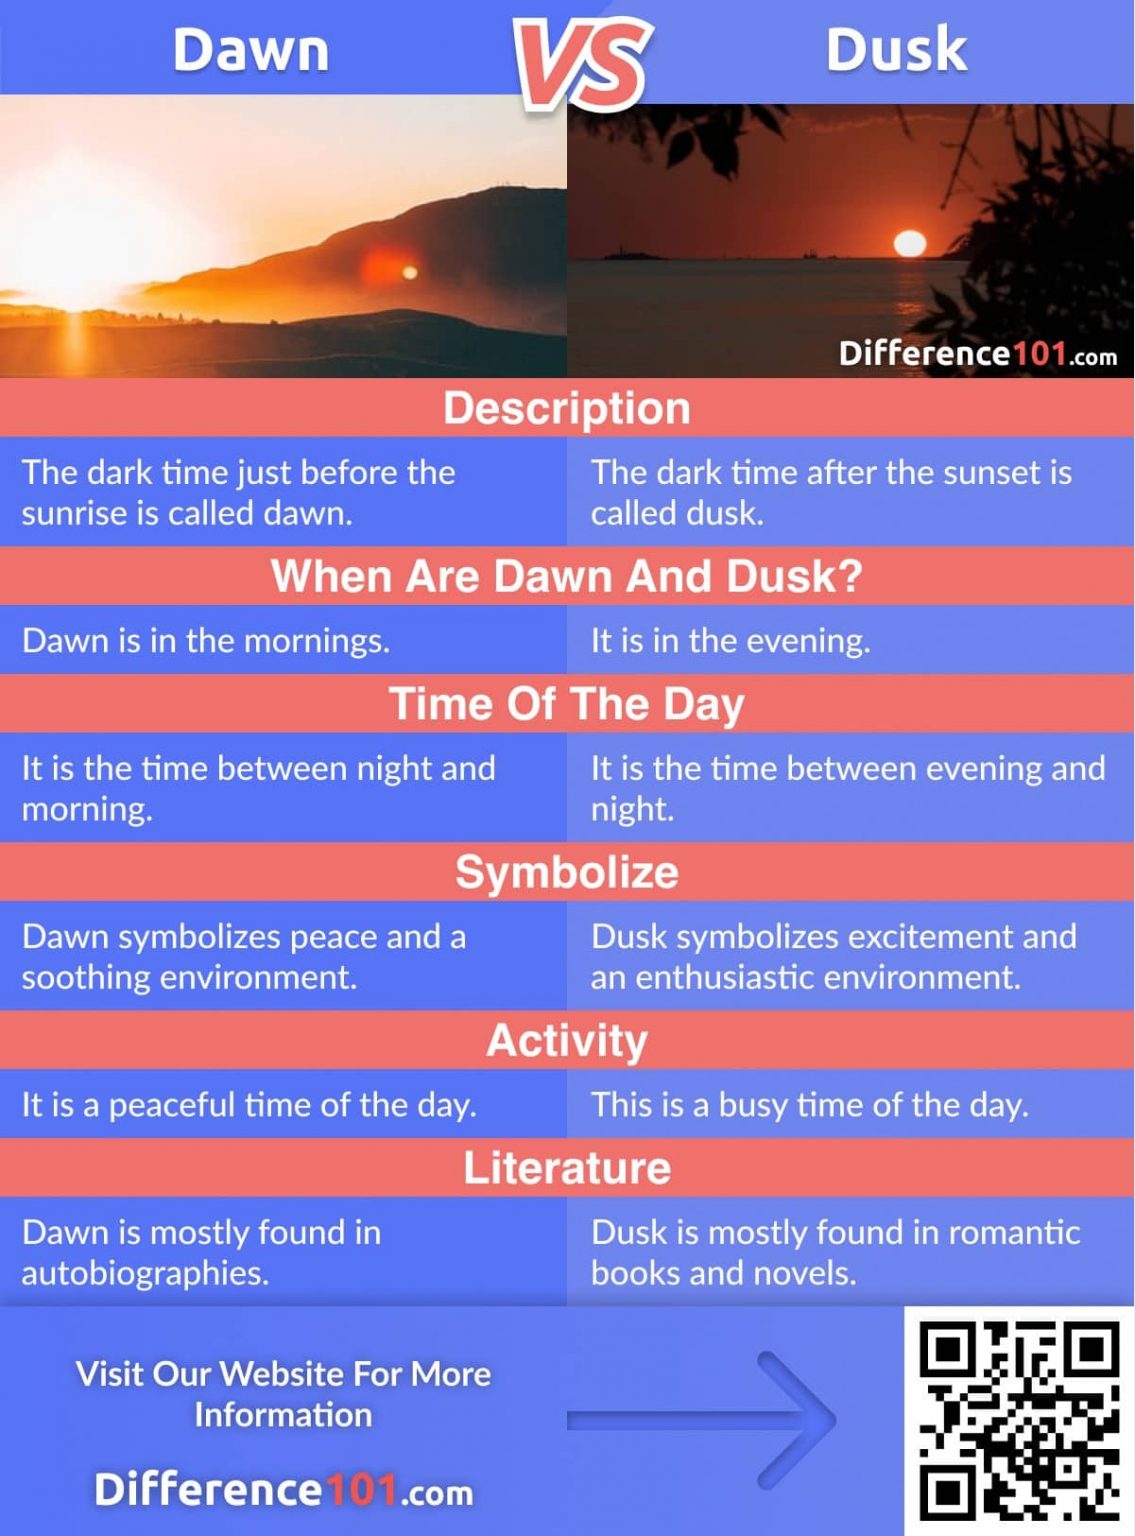 dawn definition dusk definition